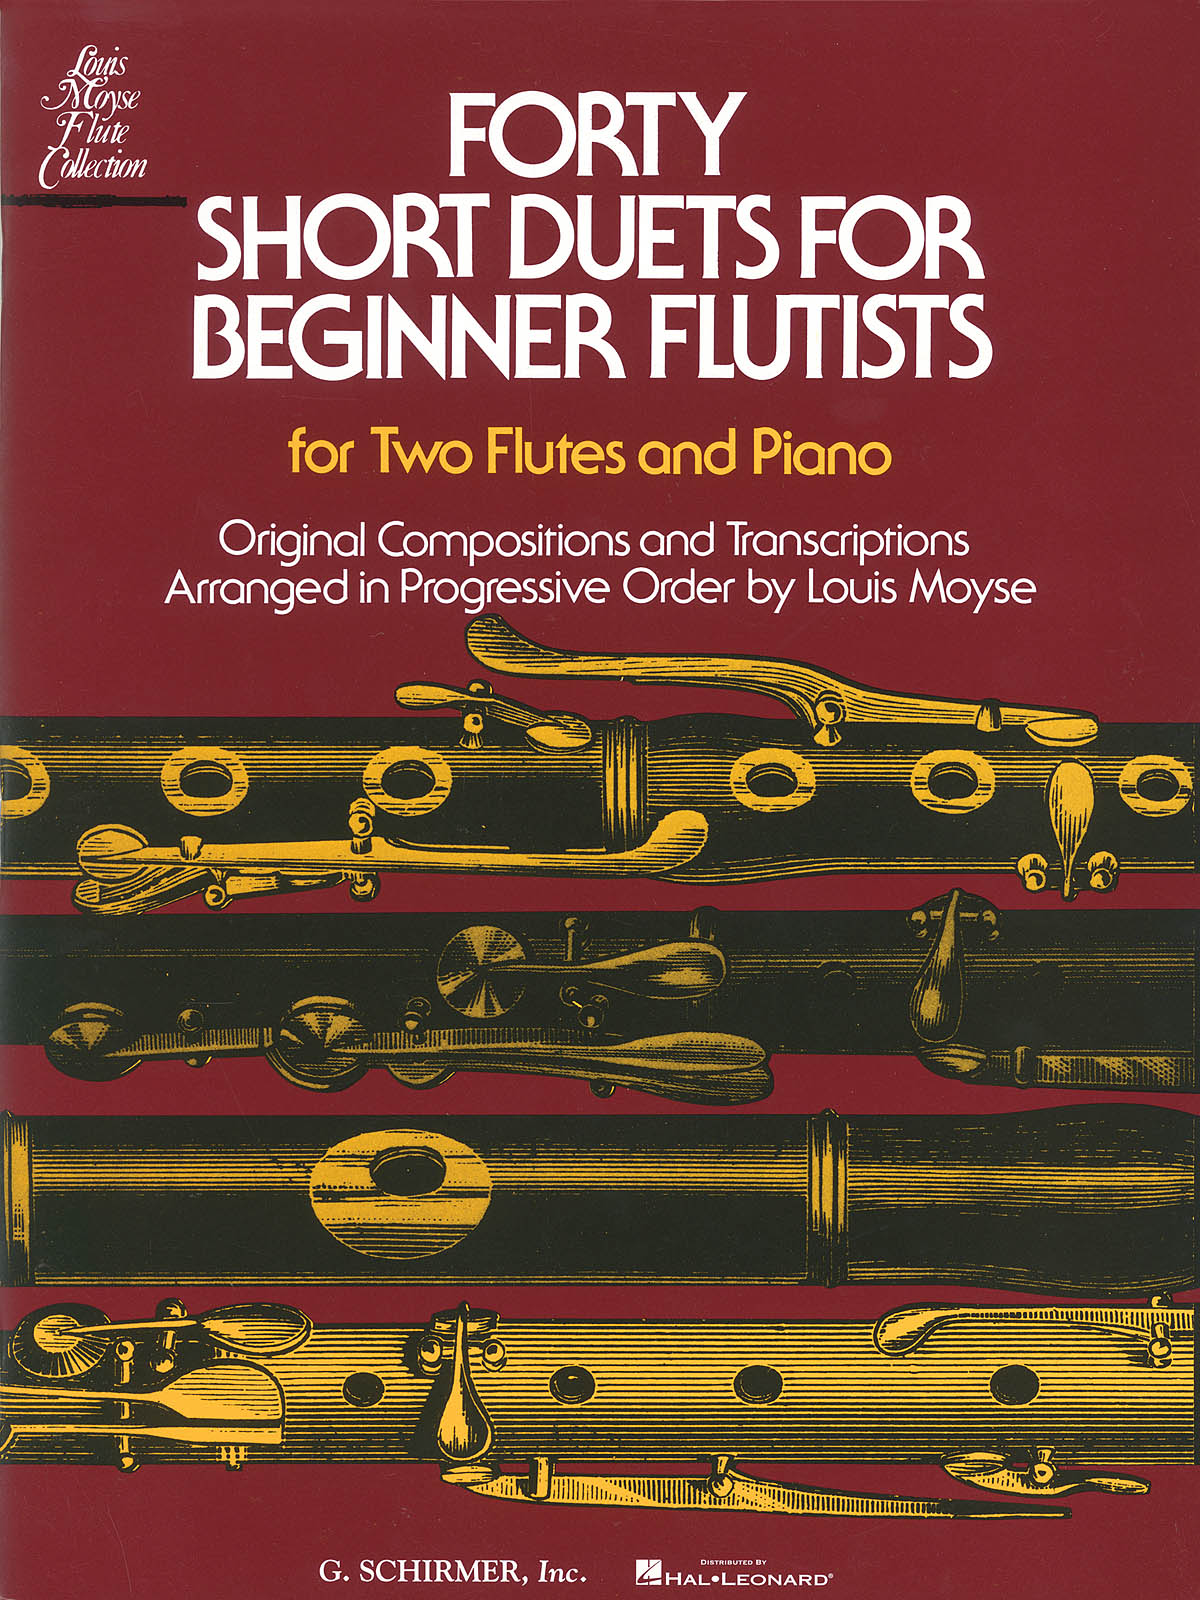 Forty Short Duets for Beginner Flutists - noty pro dvě příčné flétny a klavír